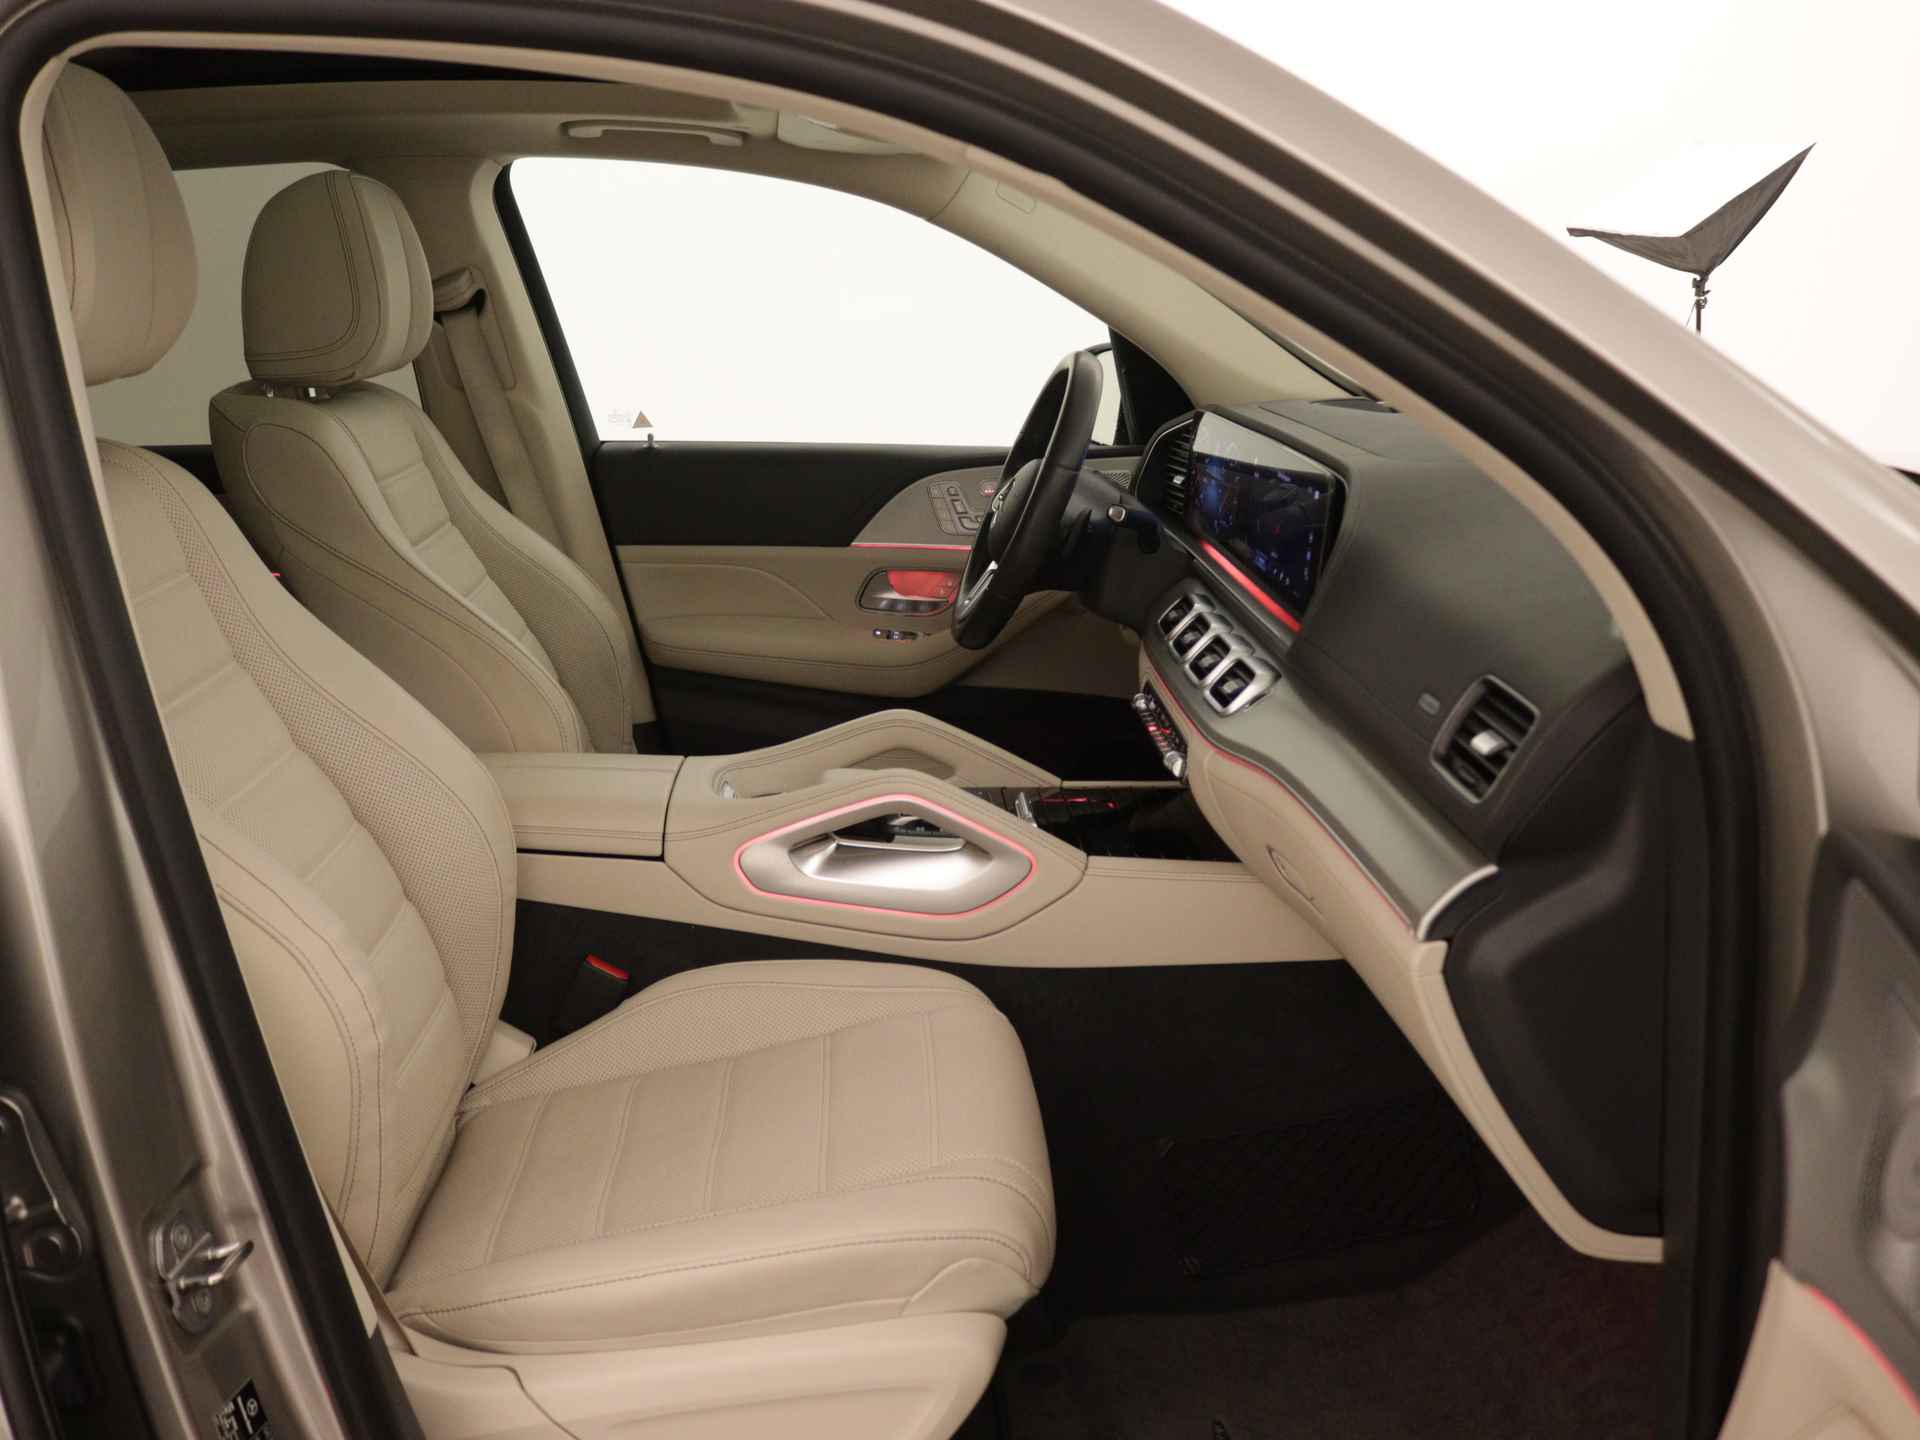 Mercedes-Benz GLE 450 4MATIC AMG Line Premium | Panoramadak | Luchtvering | Burmester | Navigatie | MBUX wide screen | Alarm klasse 3 | Parking support | inclusief 24 maanden MB Certified garantie voor europa - 26/39